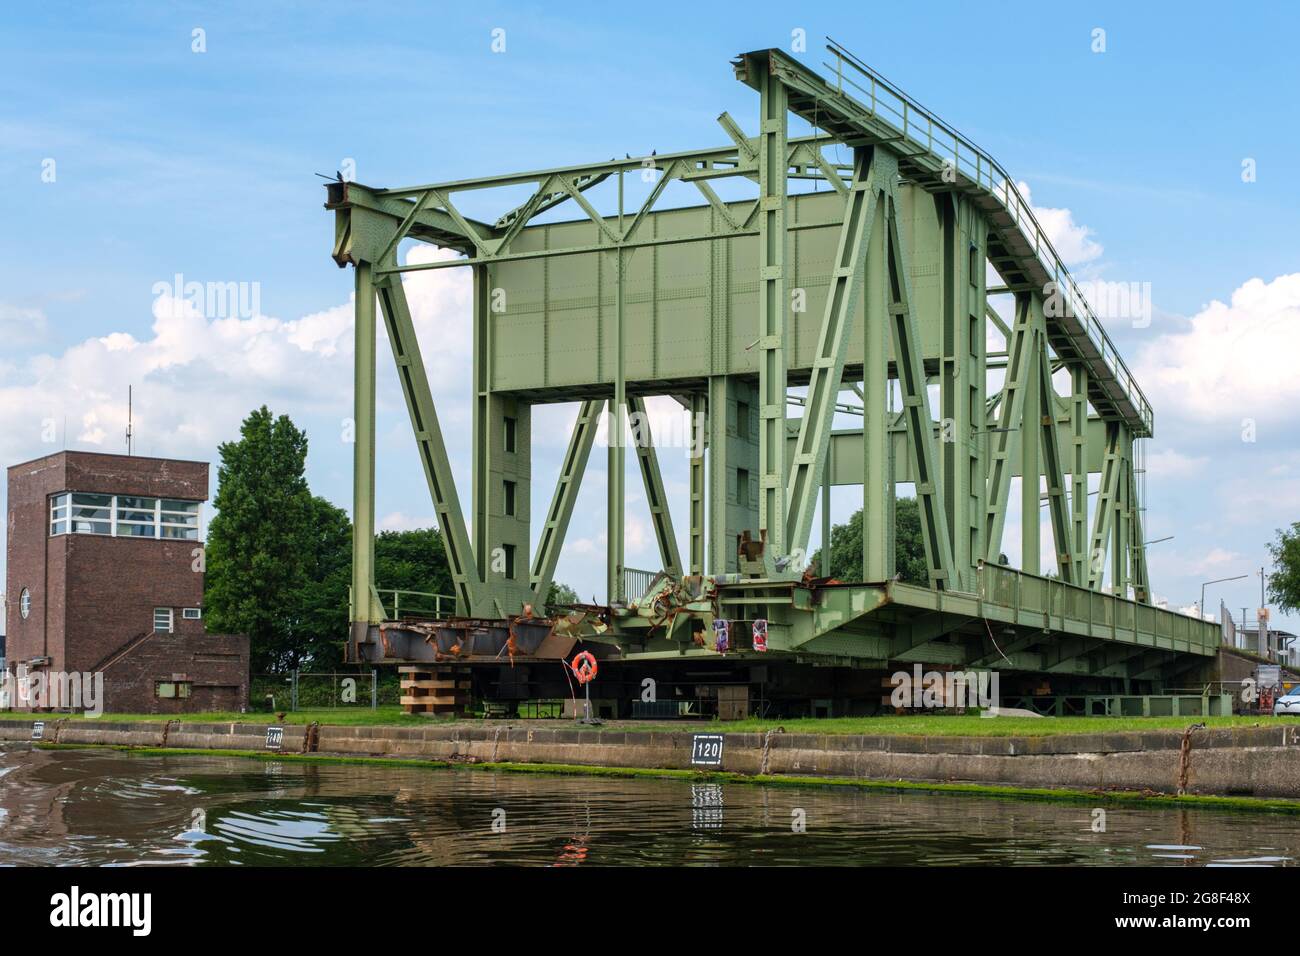 Kaputte Schleusenbrücke Bremerhaven Überseehafen, Deutschland. Broken Bridge Bremerhaven, Germany. Stock Photo